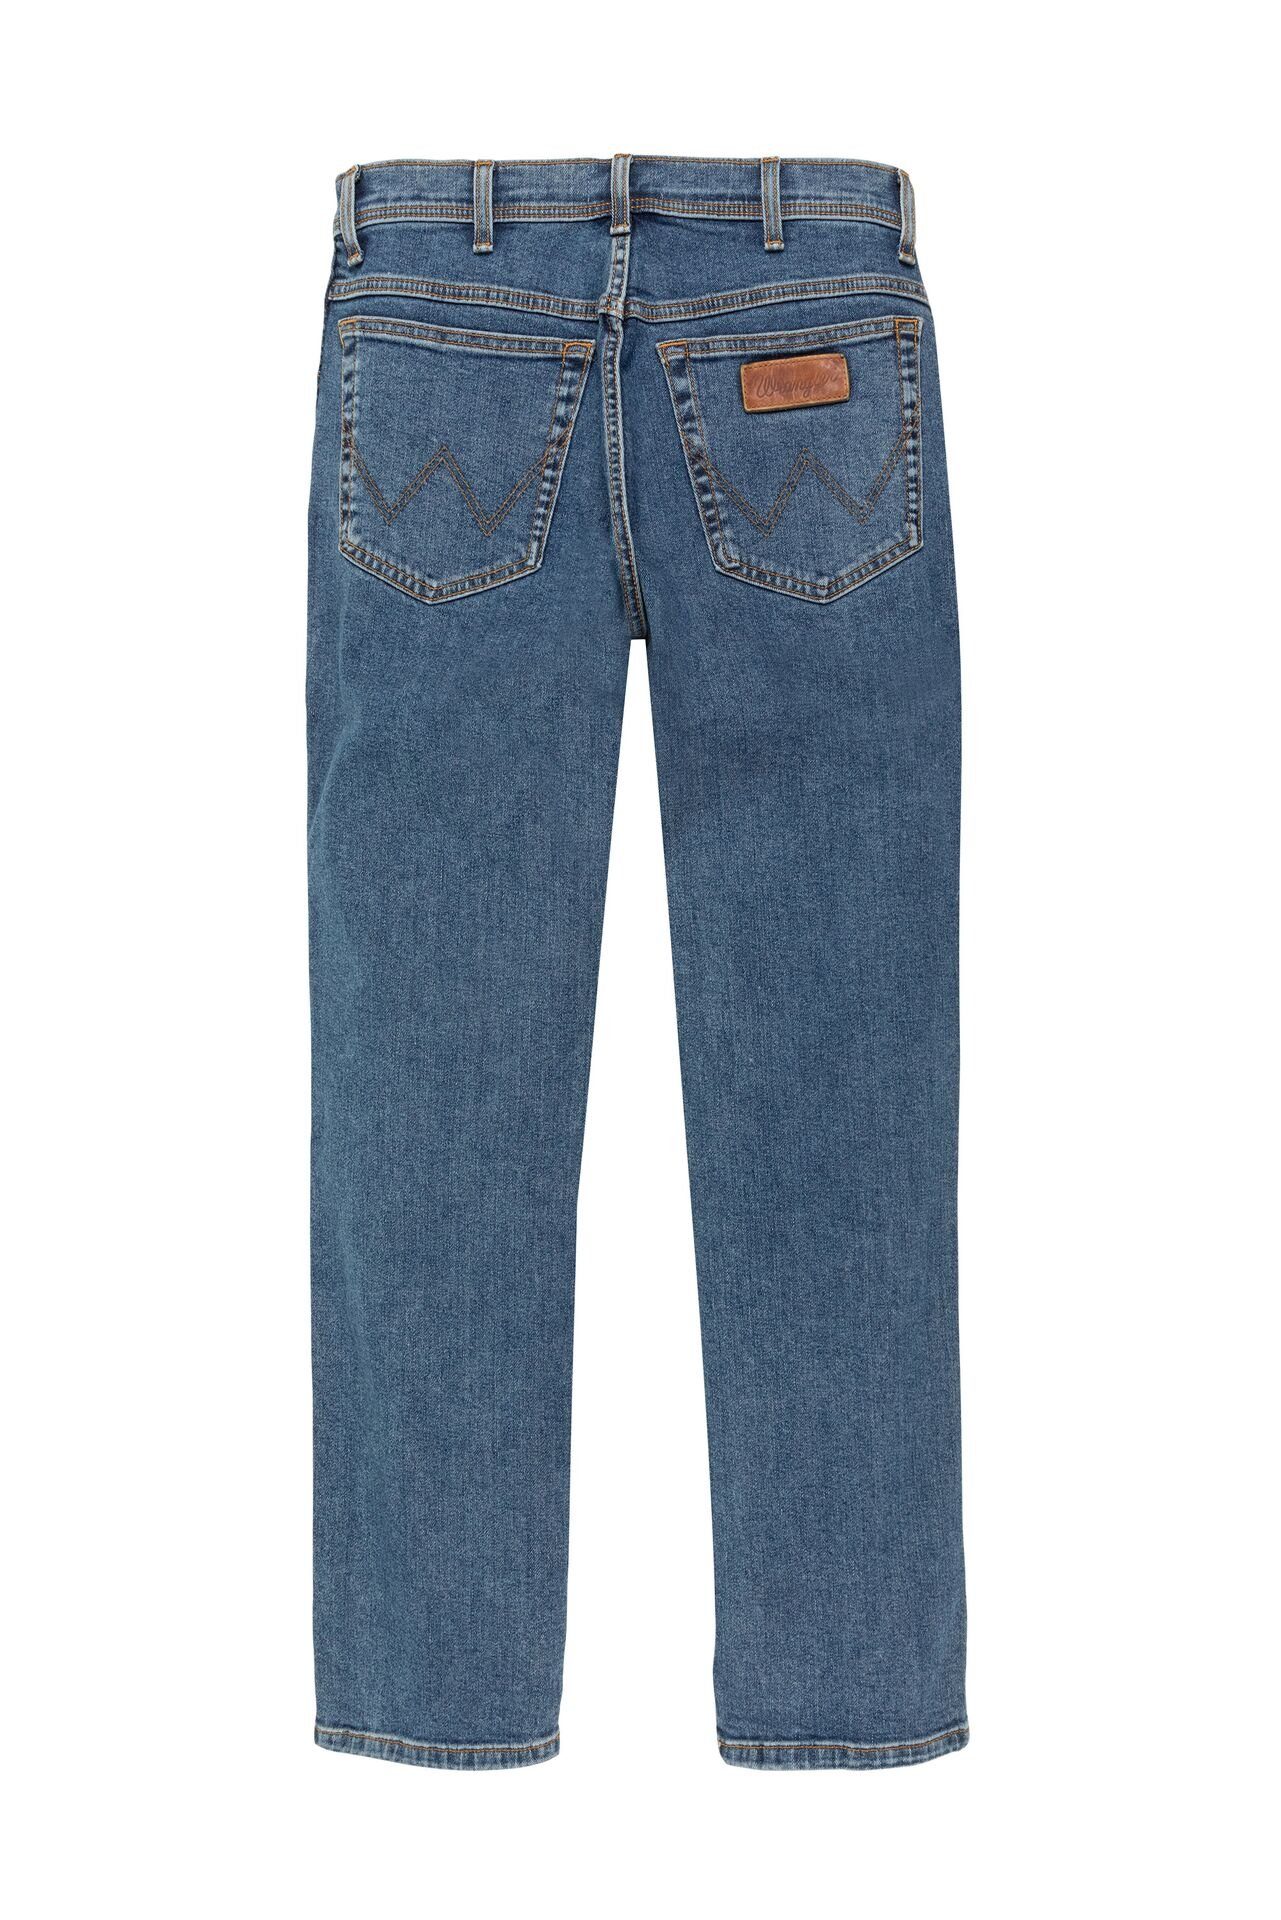 WRANGLER TEXAS W12133010 5-Pocket-Jeans stonewash Wrangler